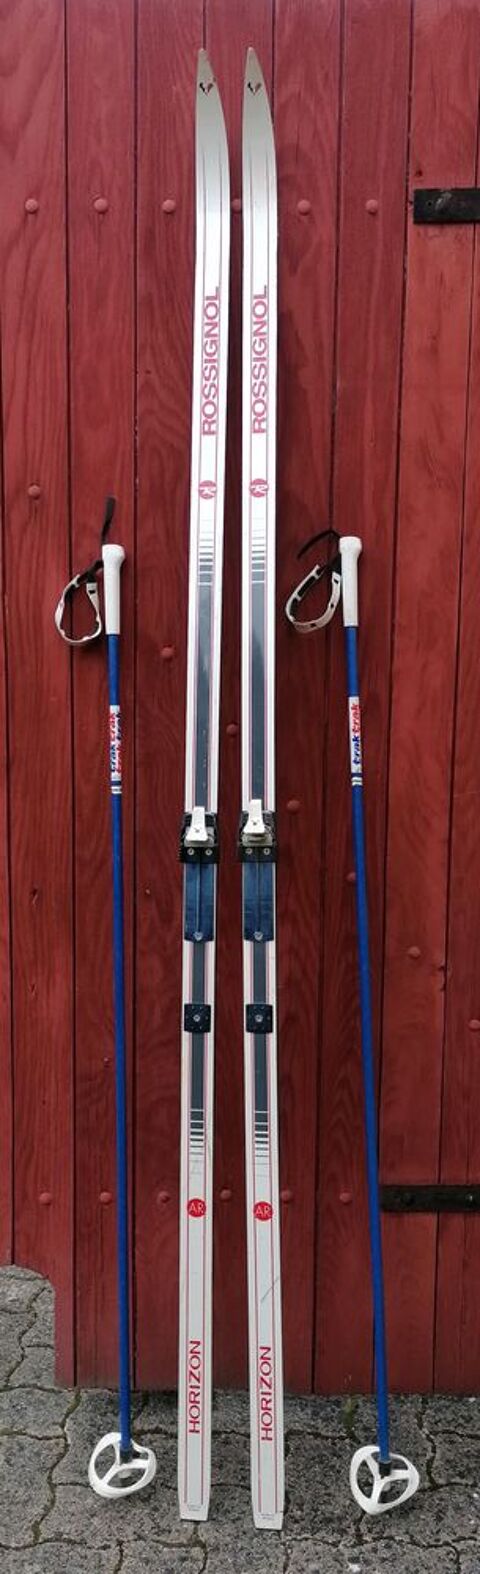 Skis de fond de marque Rossignol. 18 Mig (89)